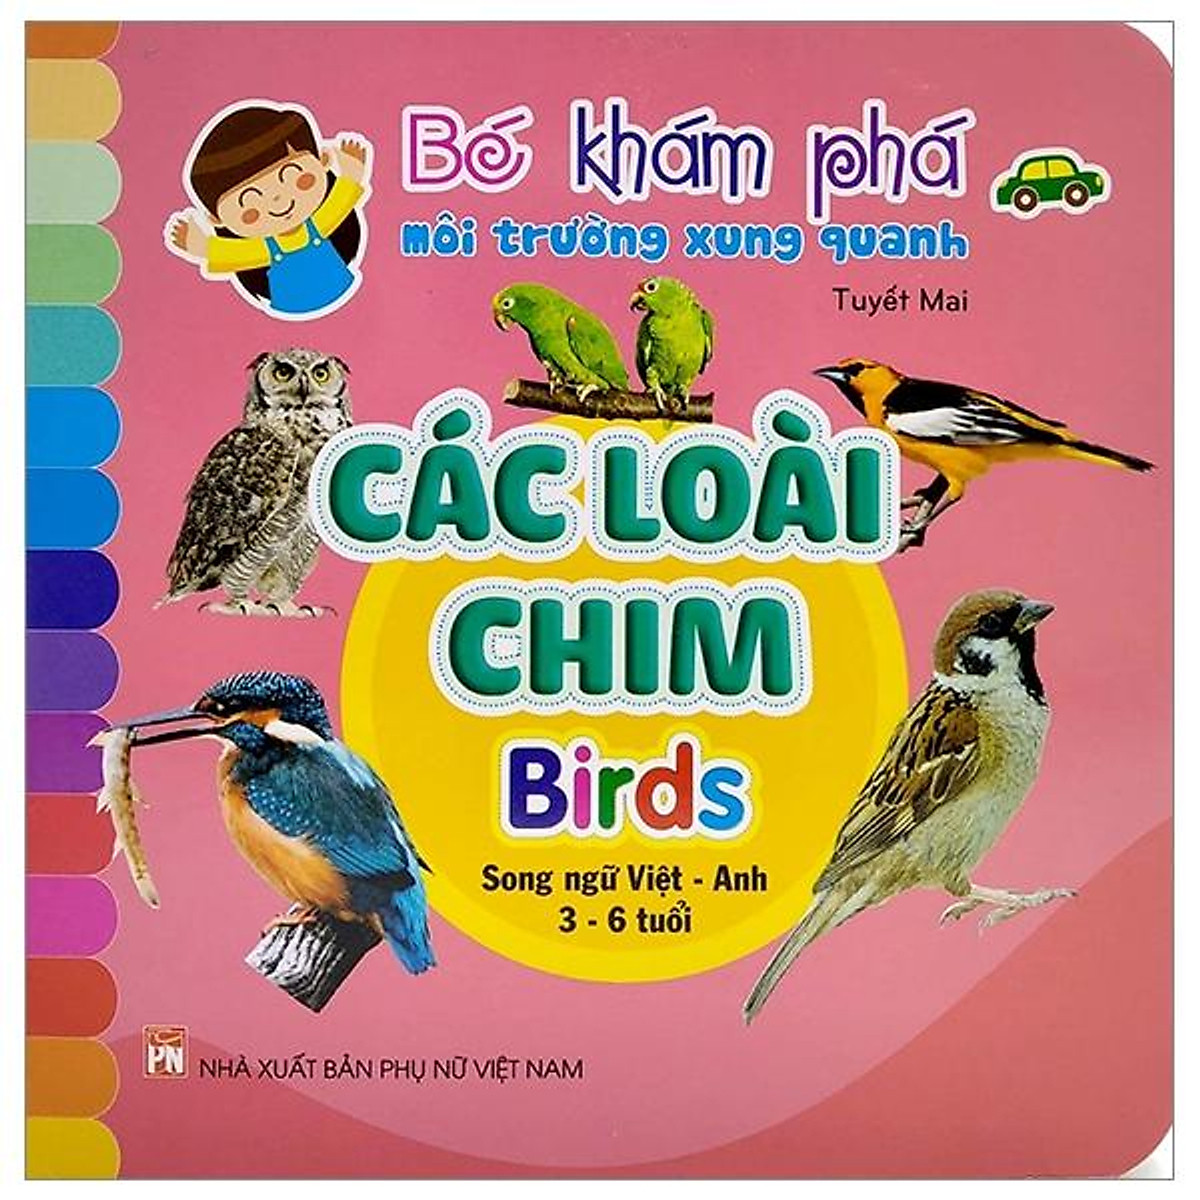 Bé Khám Phá Môi Trường Xung Quanh: Các Loài Chim - Birds (Song Ngữ Việt - Anh)